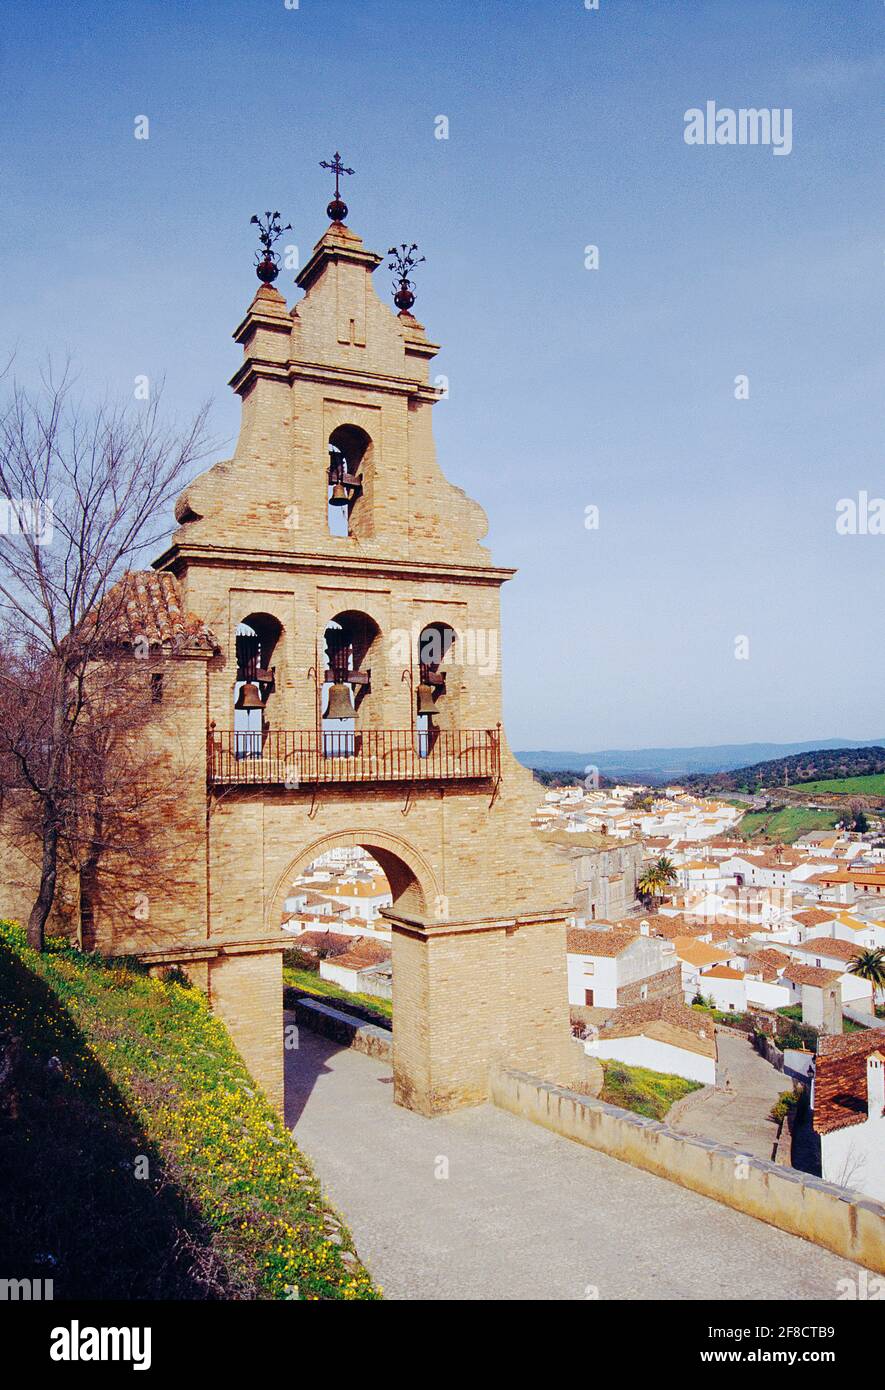 Porte et vue du château. Aracena, province de Huelva, Andalousie, Espagne. Banque D'Images